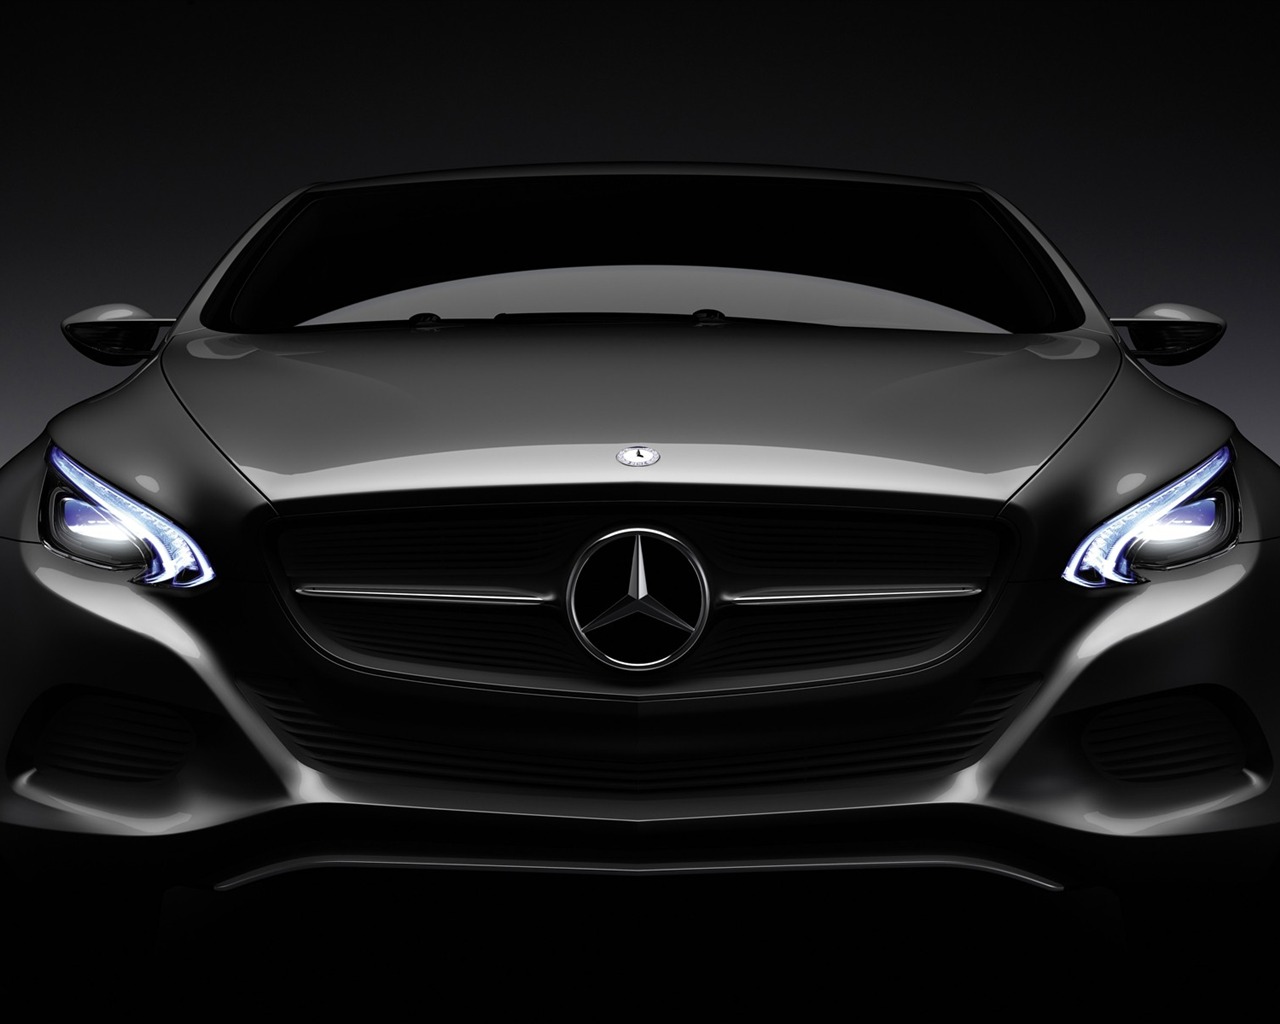 Mercedes-Benz Concept Car Wallpaper (2) #8 - 1280x1024